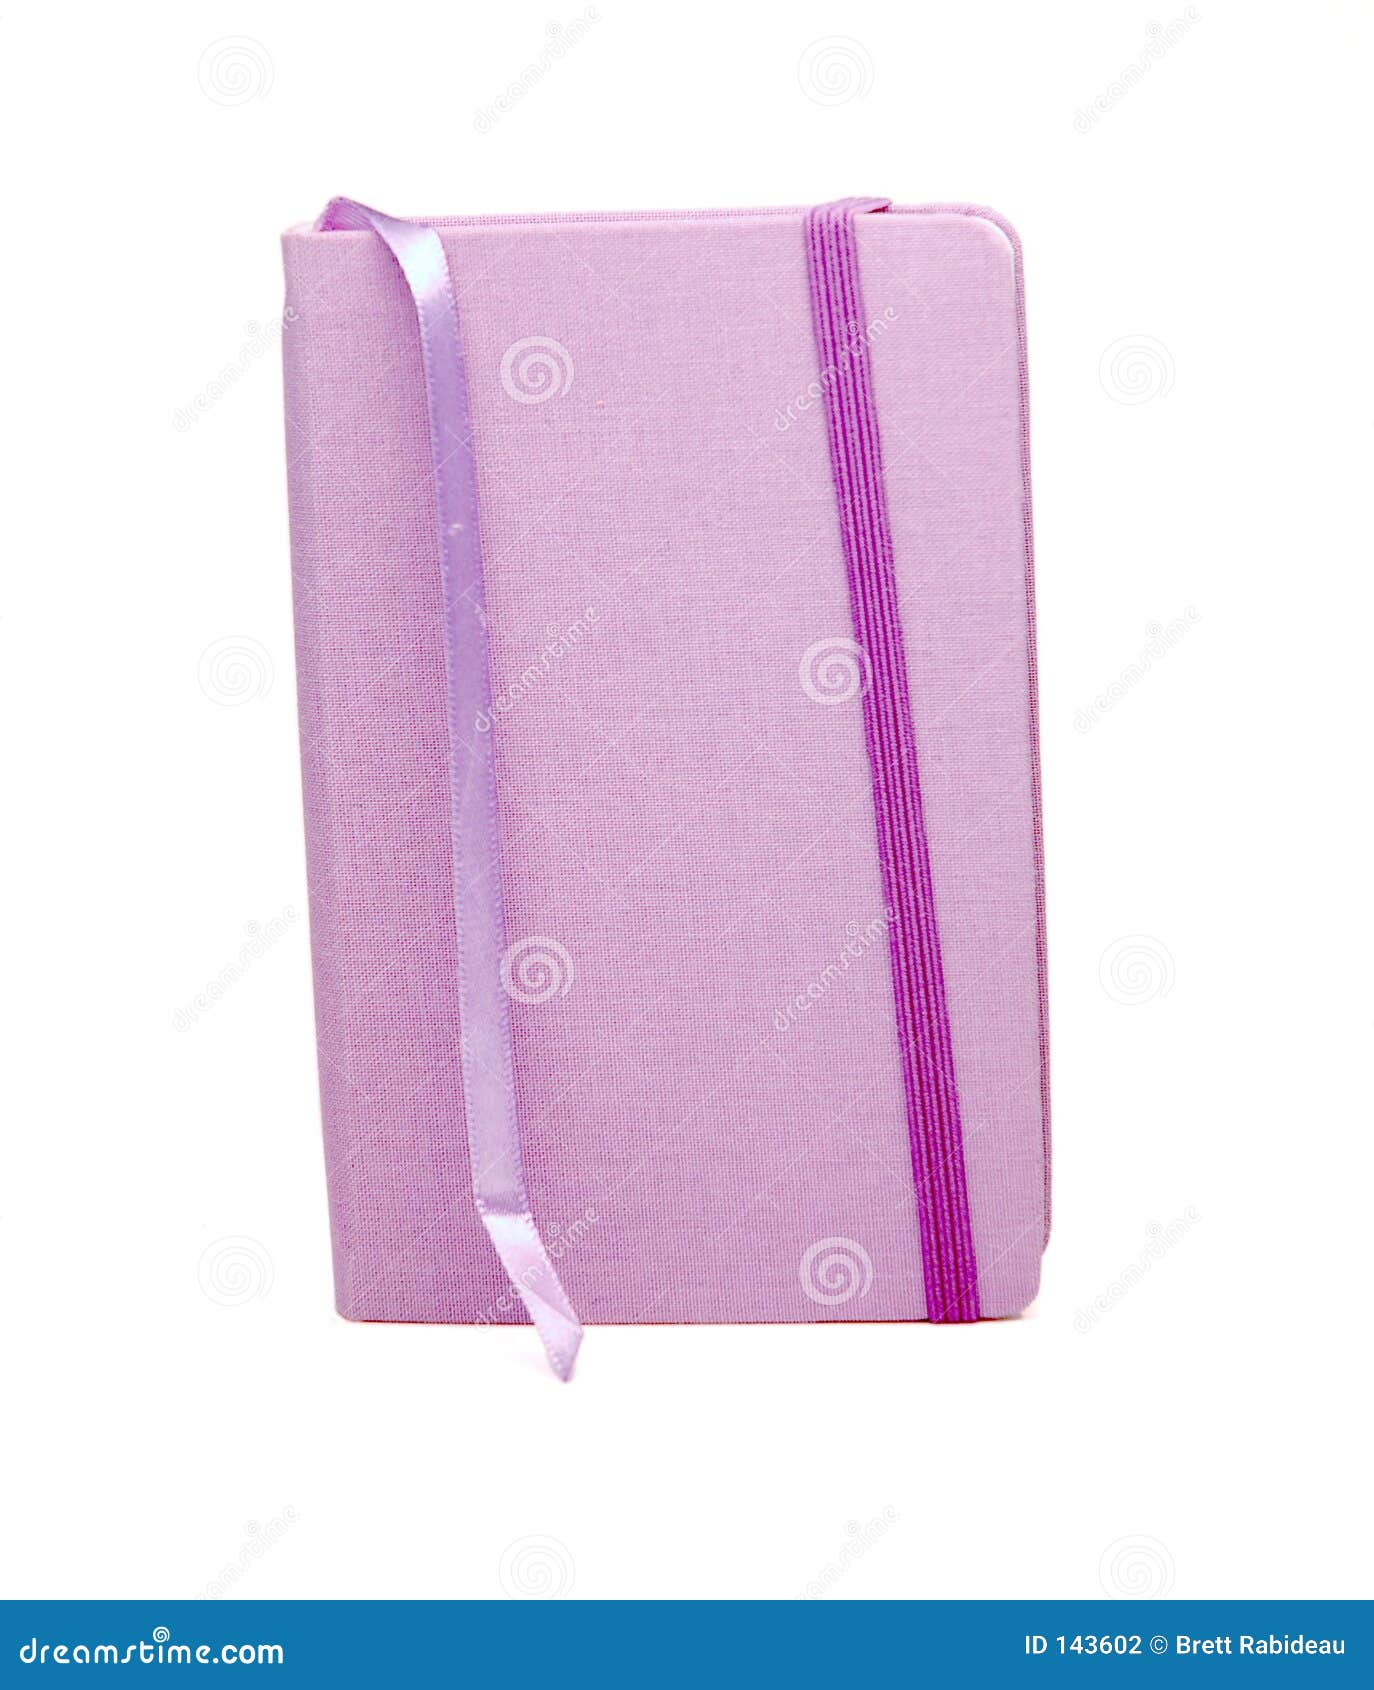 Purpurrotes Notizbuch mit Bookmark. Tuch-abgedecktes purpurrotes Notizbuch (Journal, Tagebuch) mit Farbbandbookmark und elastisches Schliessen